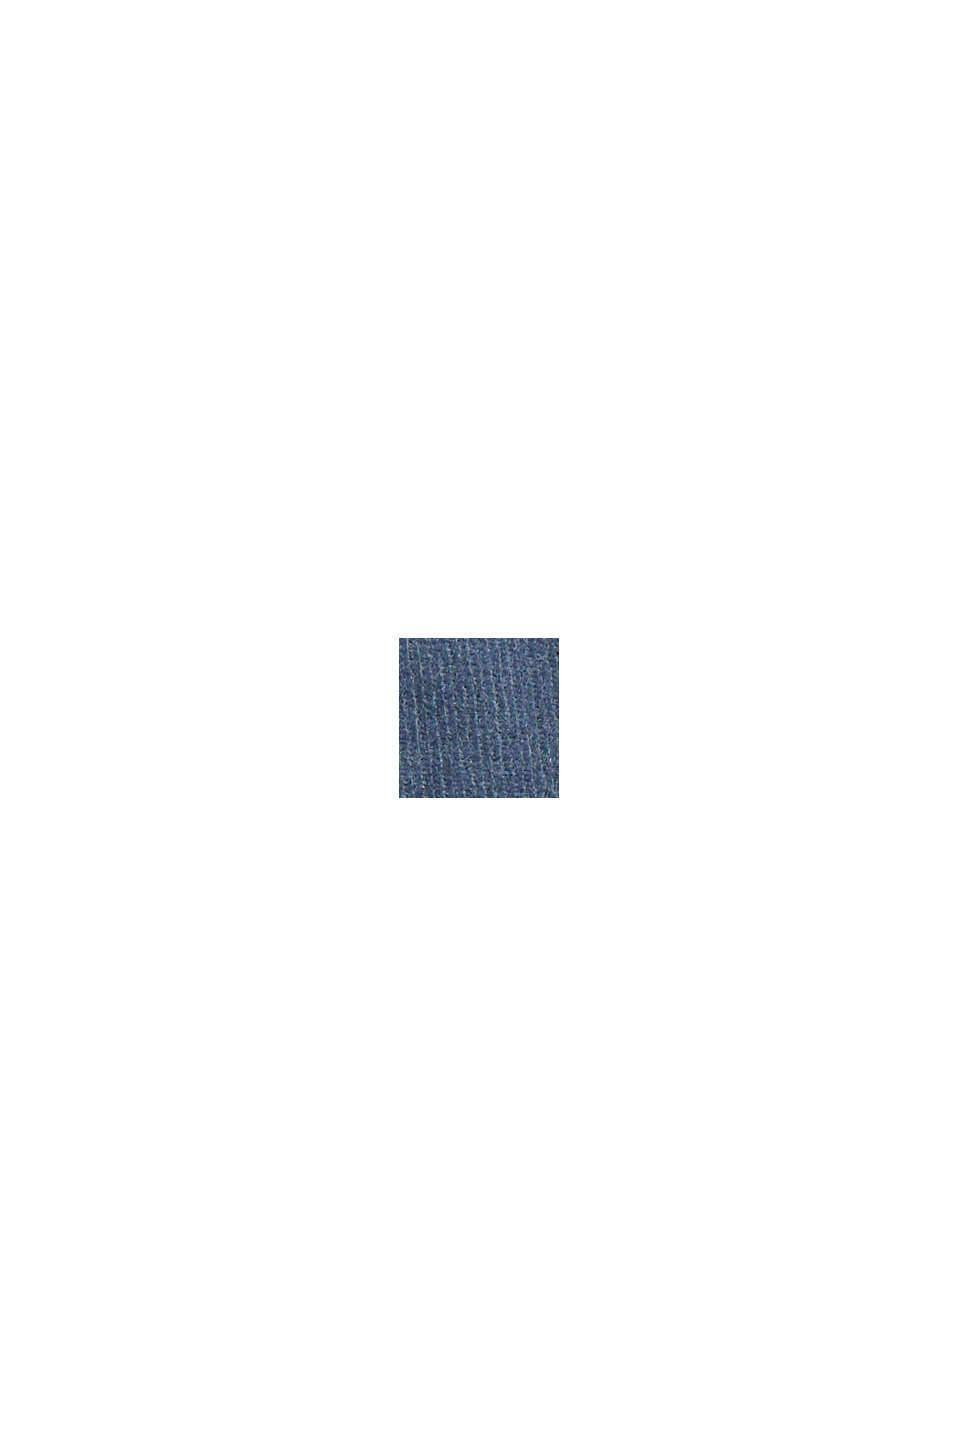 Pantalon en fin velours de coton mélangé, GREY BLUE, swatch